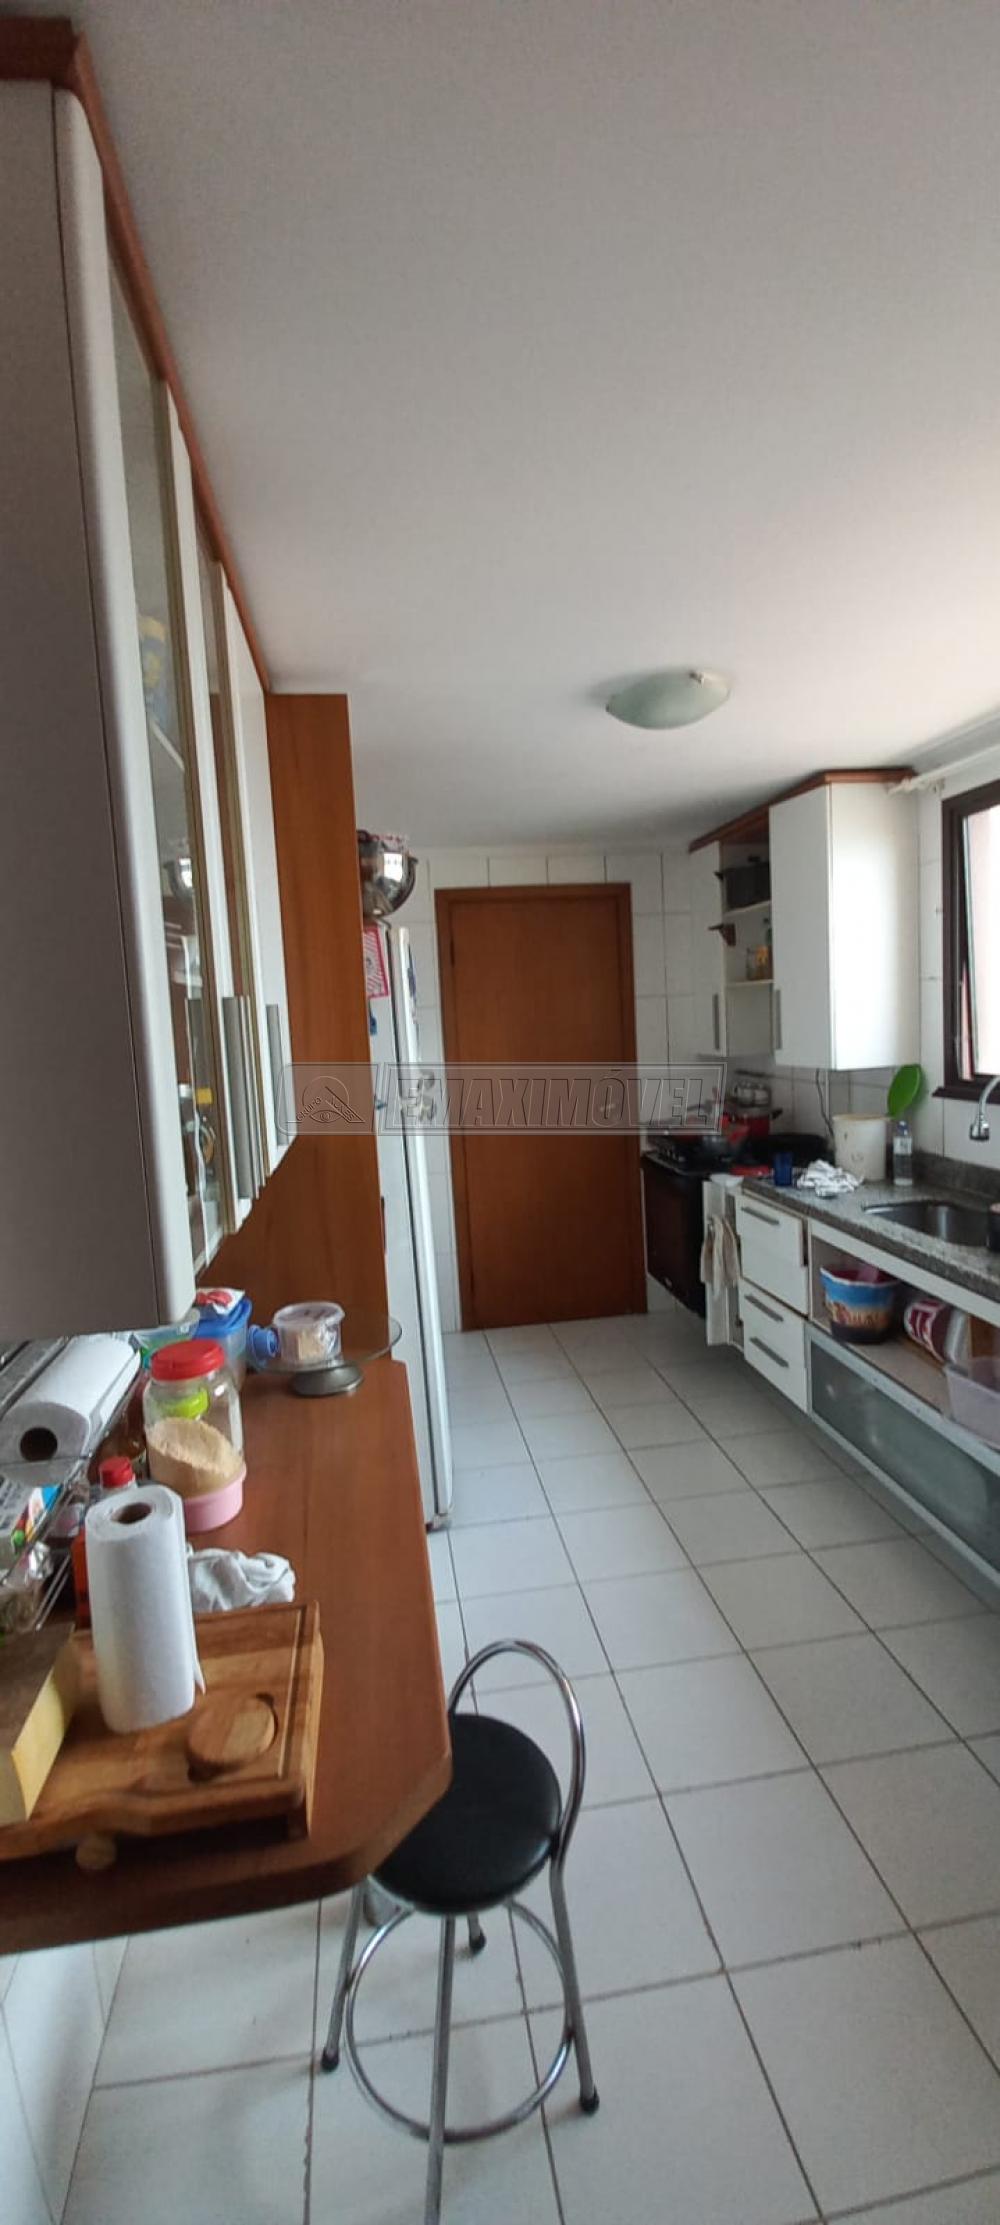 Comprar Apartamento / Padrão em Sorocaba R$ 650.000,00 - Foto 3